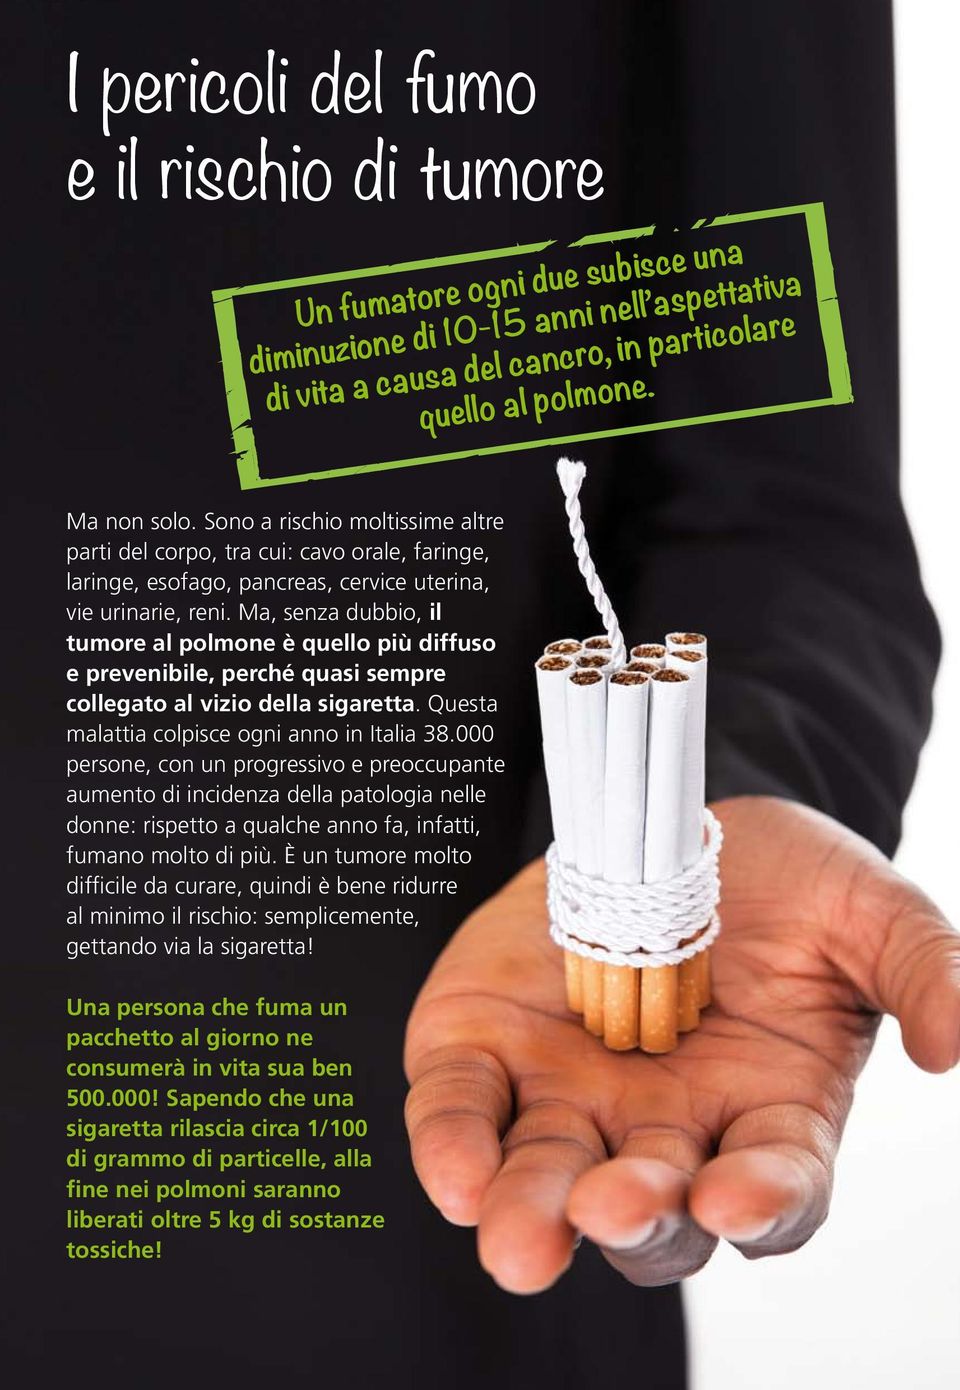 Ma, senza dubbio, il tumore al polmone è quello più diffuso e prevenibile, perché quasi sempre collegato al vizio della sigaretta. Questa malattia colpisce ogni anno in Italia 38.